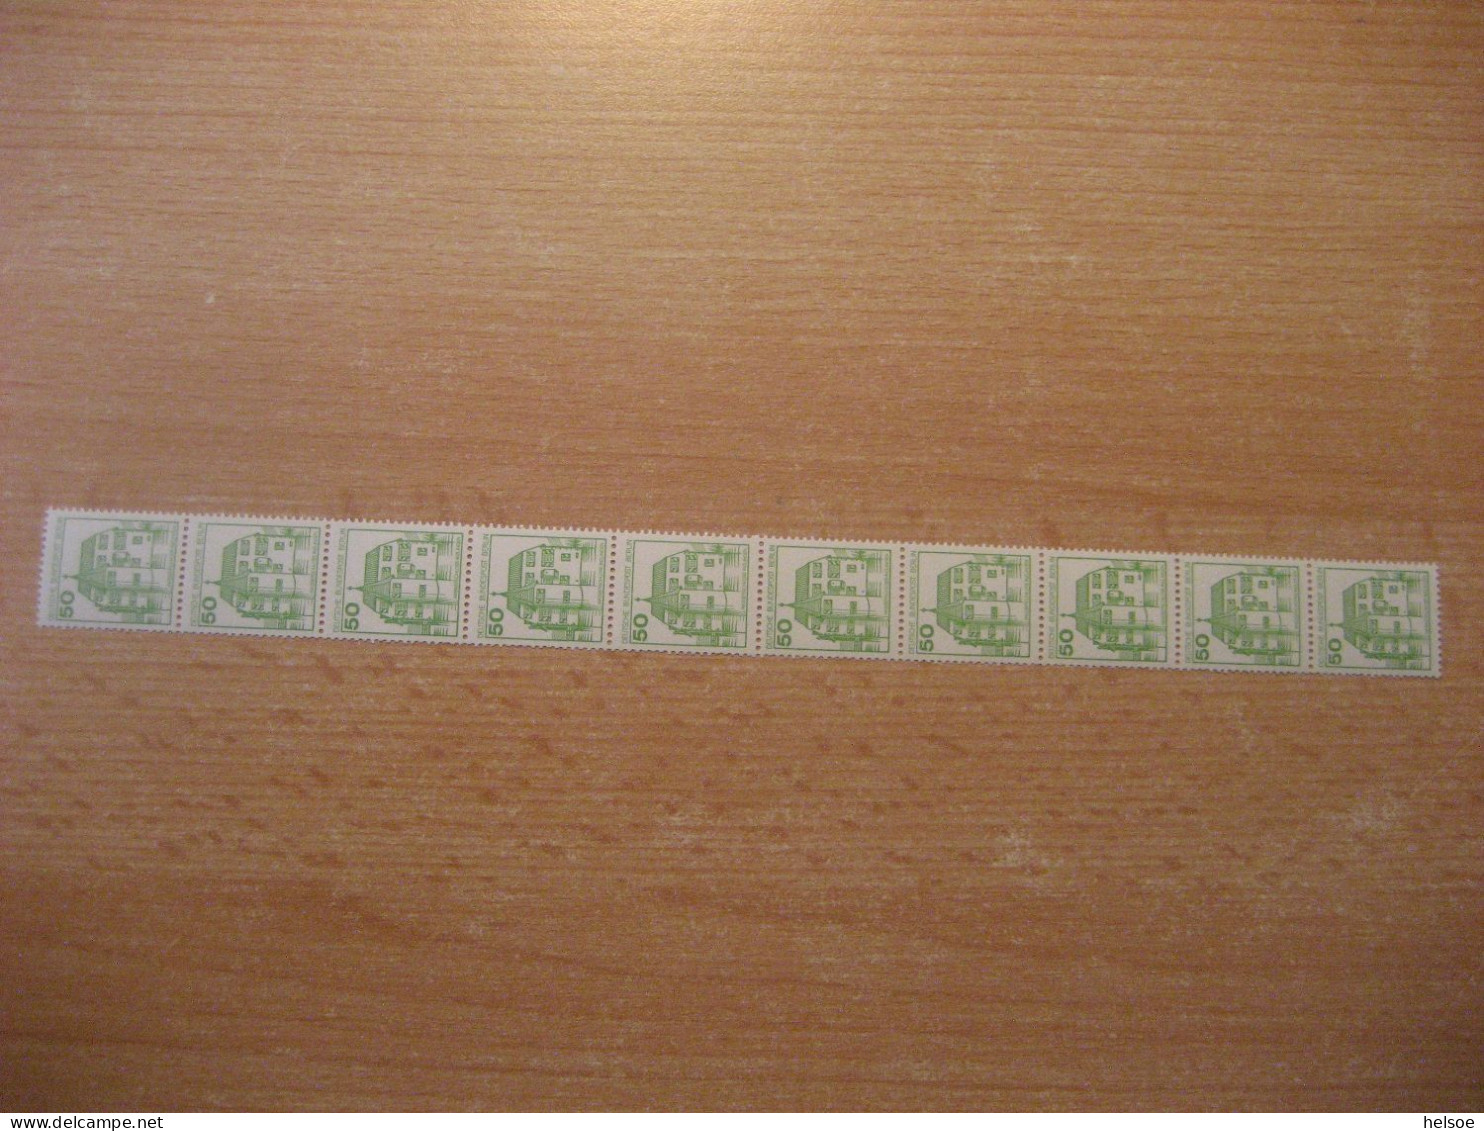 Deutschland Westberlin 1980- Rollenmarke 50 Pf. Rücks. Zählnummer, Mi. 537 ** Ungebraucht - Rollenmarken